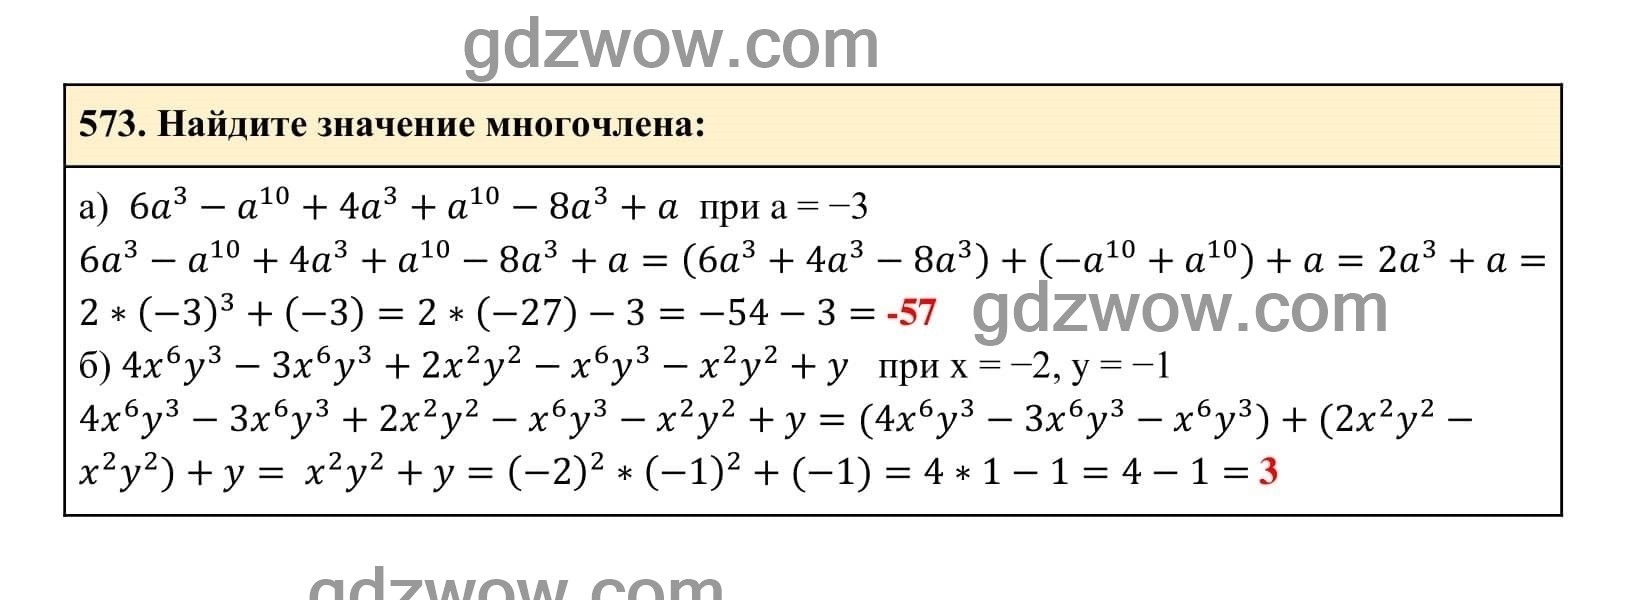 Упражнение 573 - ГДЗ по Алгебре 7 класс Учебник Макарычев (решебник) - GDZwow